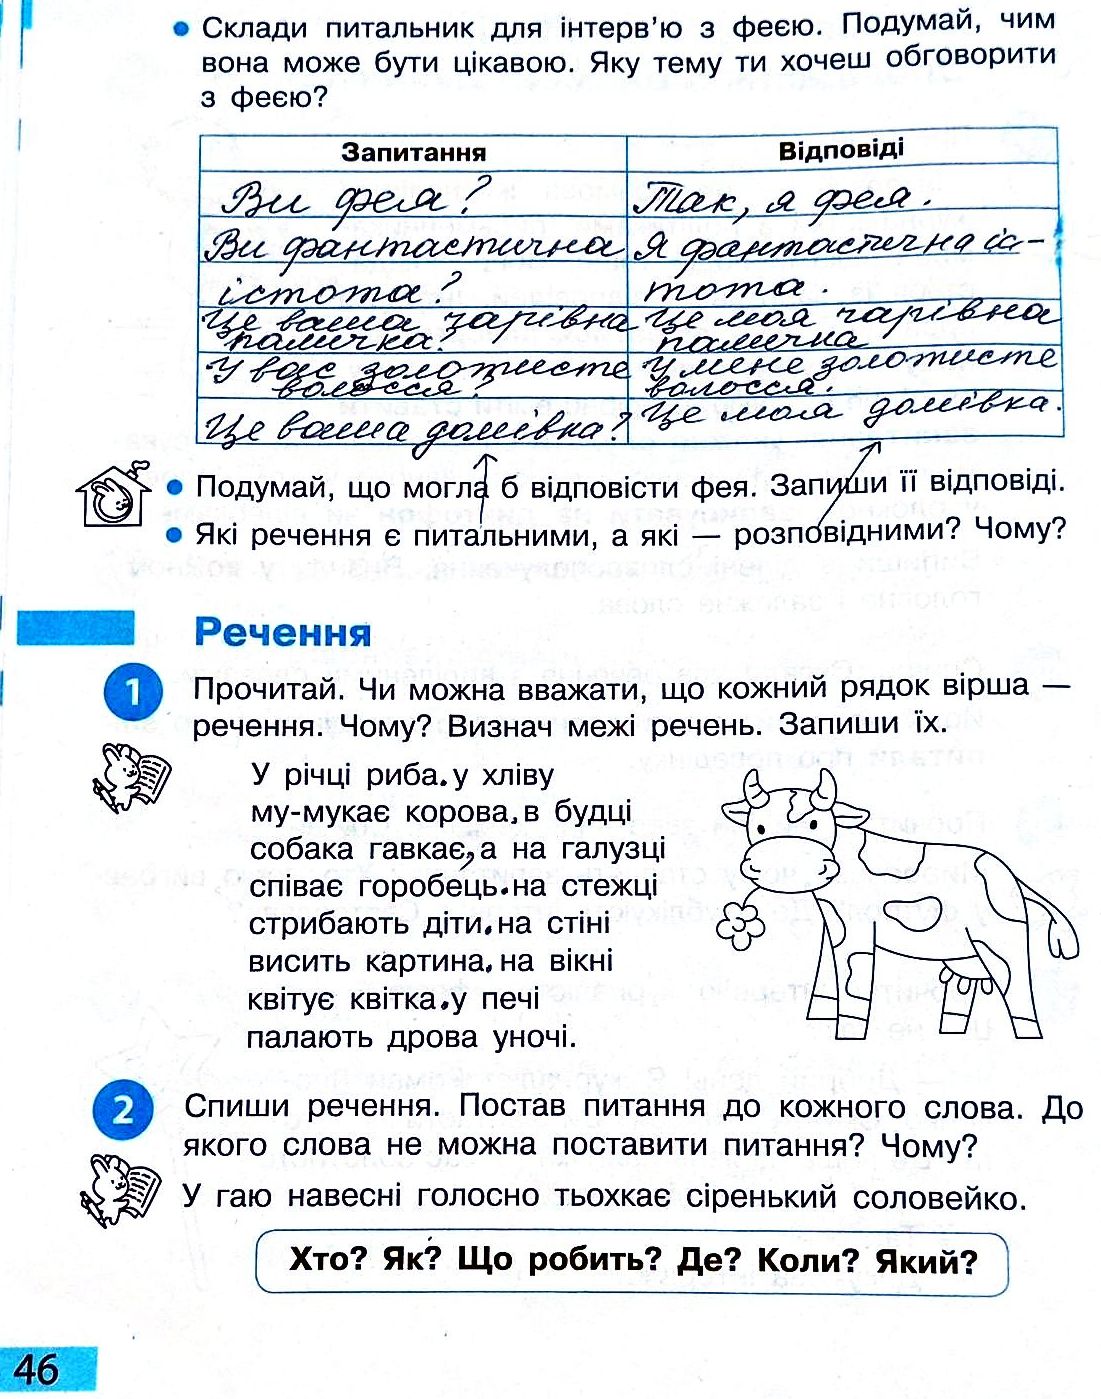 Сторінка 46 частина 2 гдз 3 клас робочий зошит українська мова Большакова